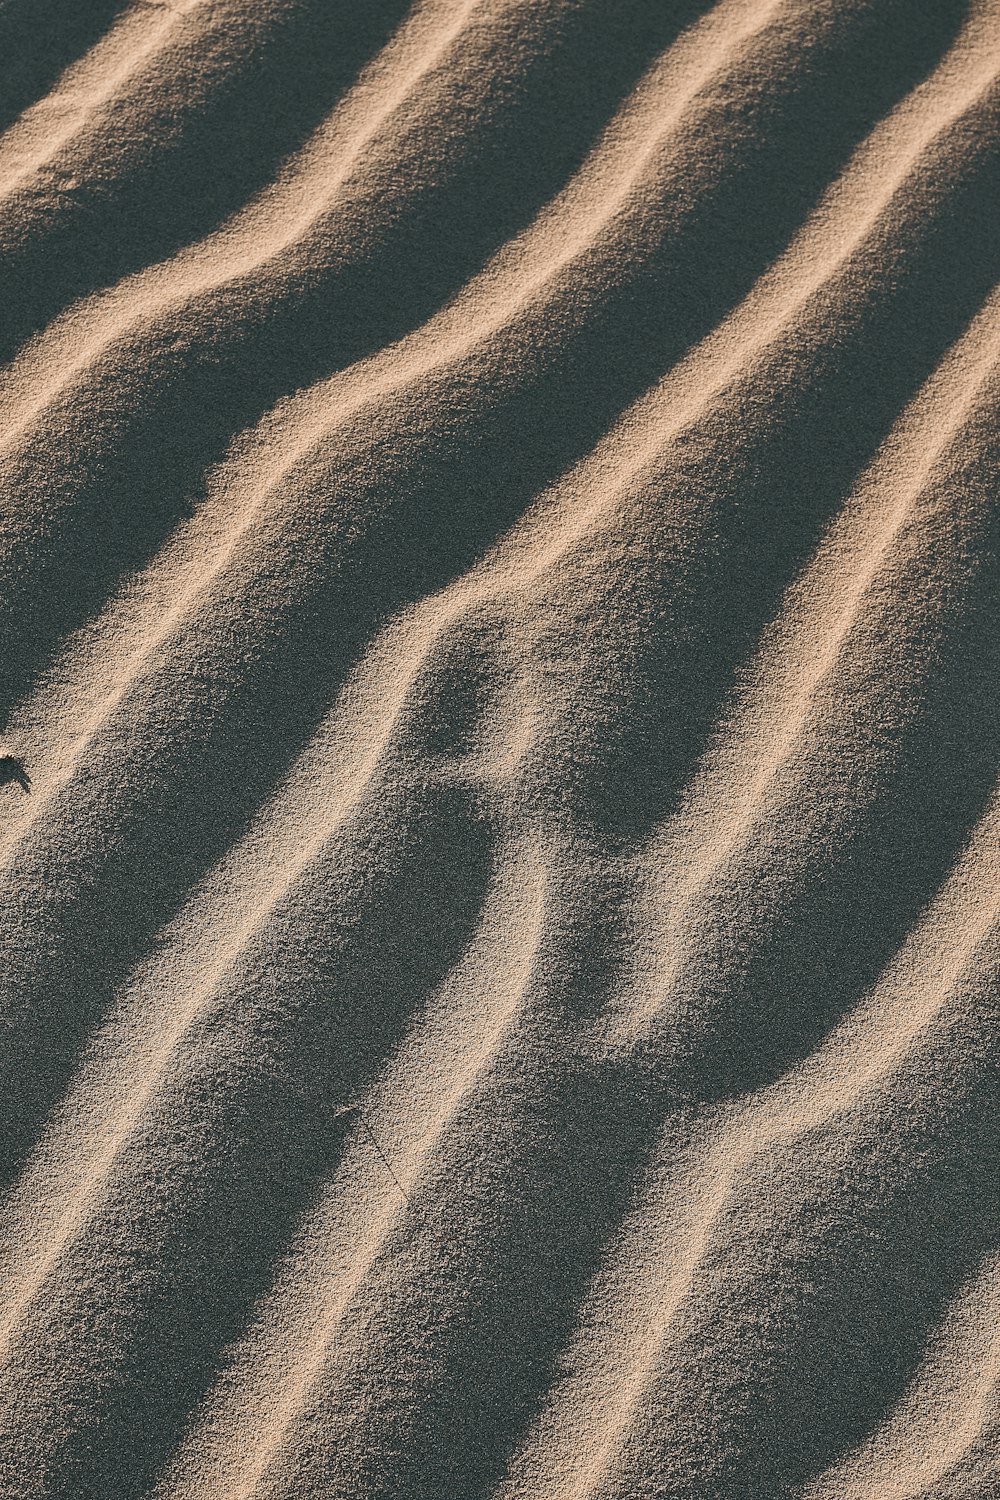 Fotografia aerea di sabbia